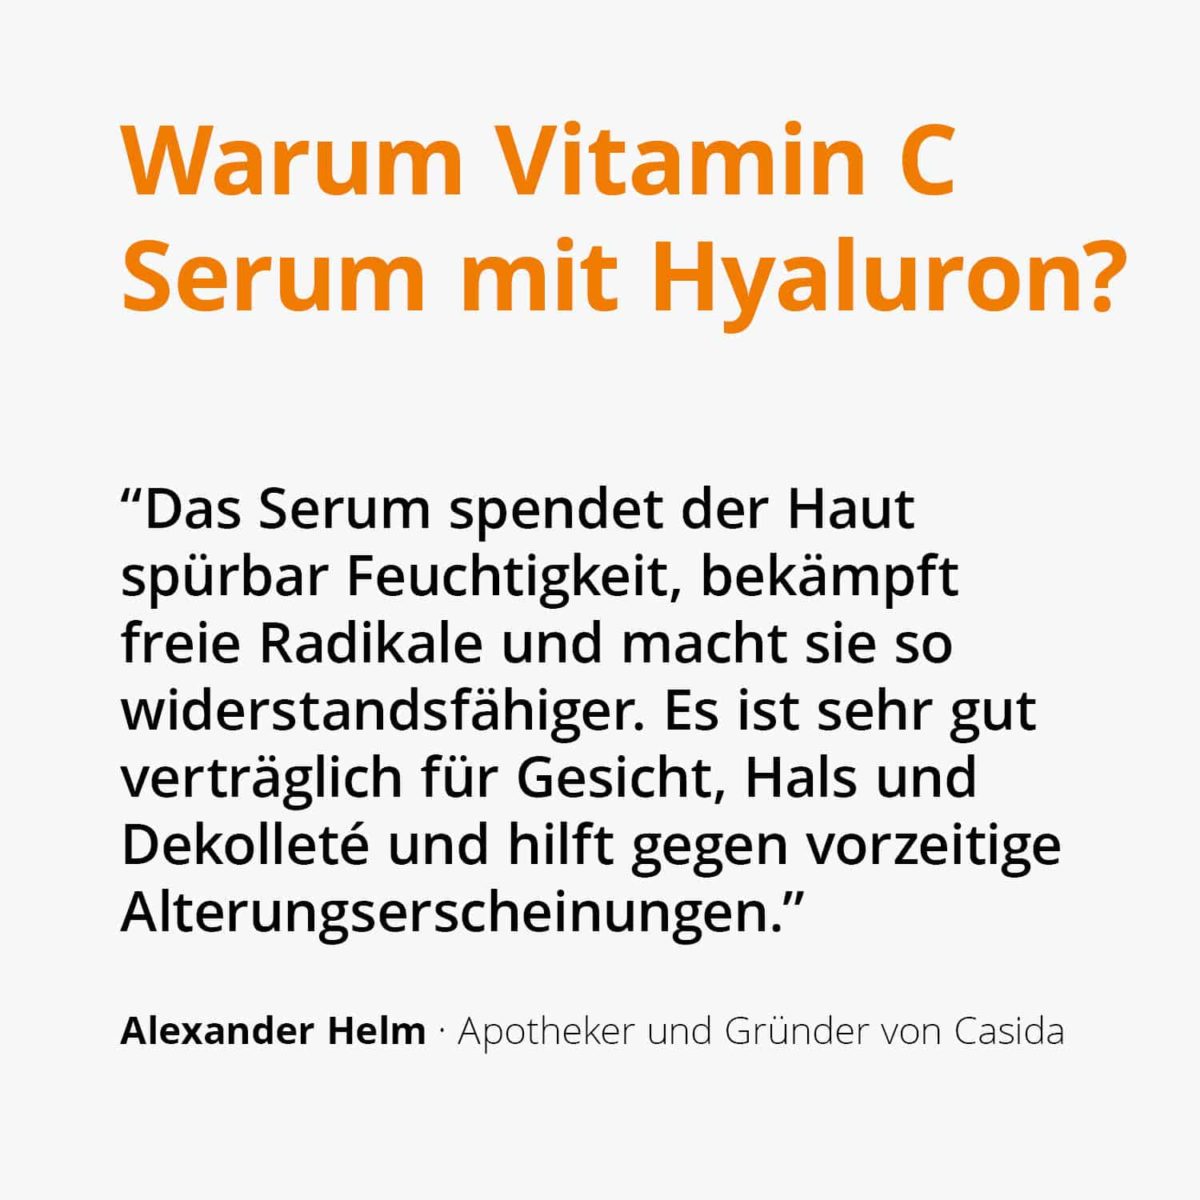 Vitamin C Serum mit Hyaluron